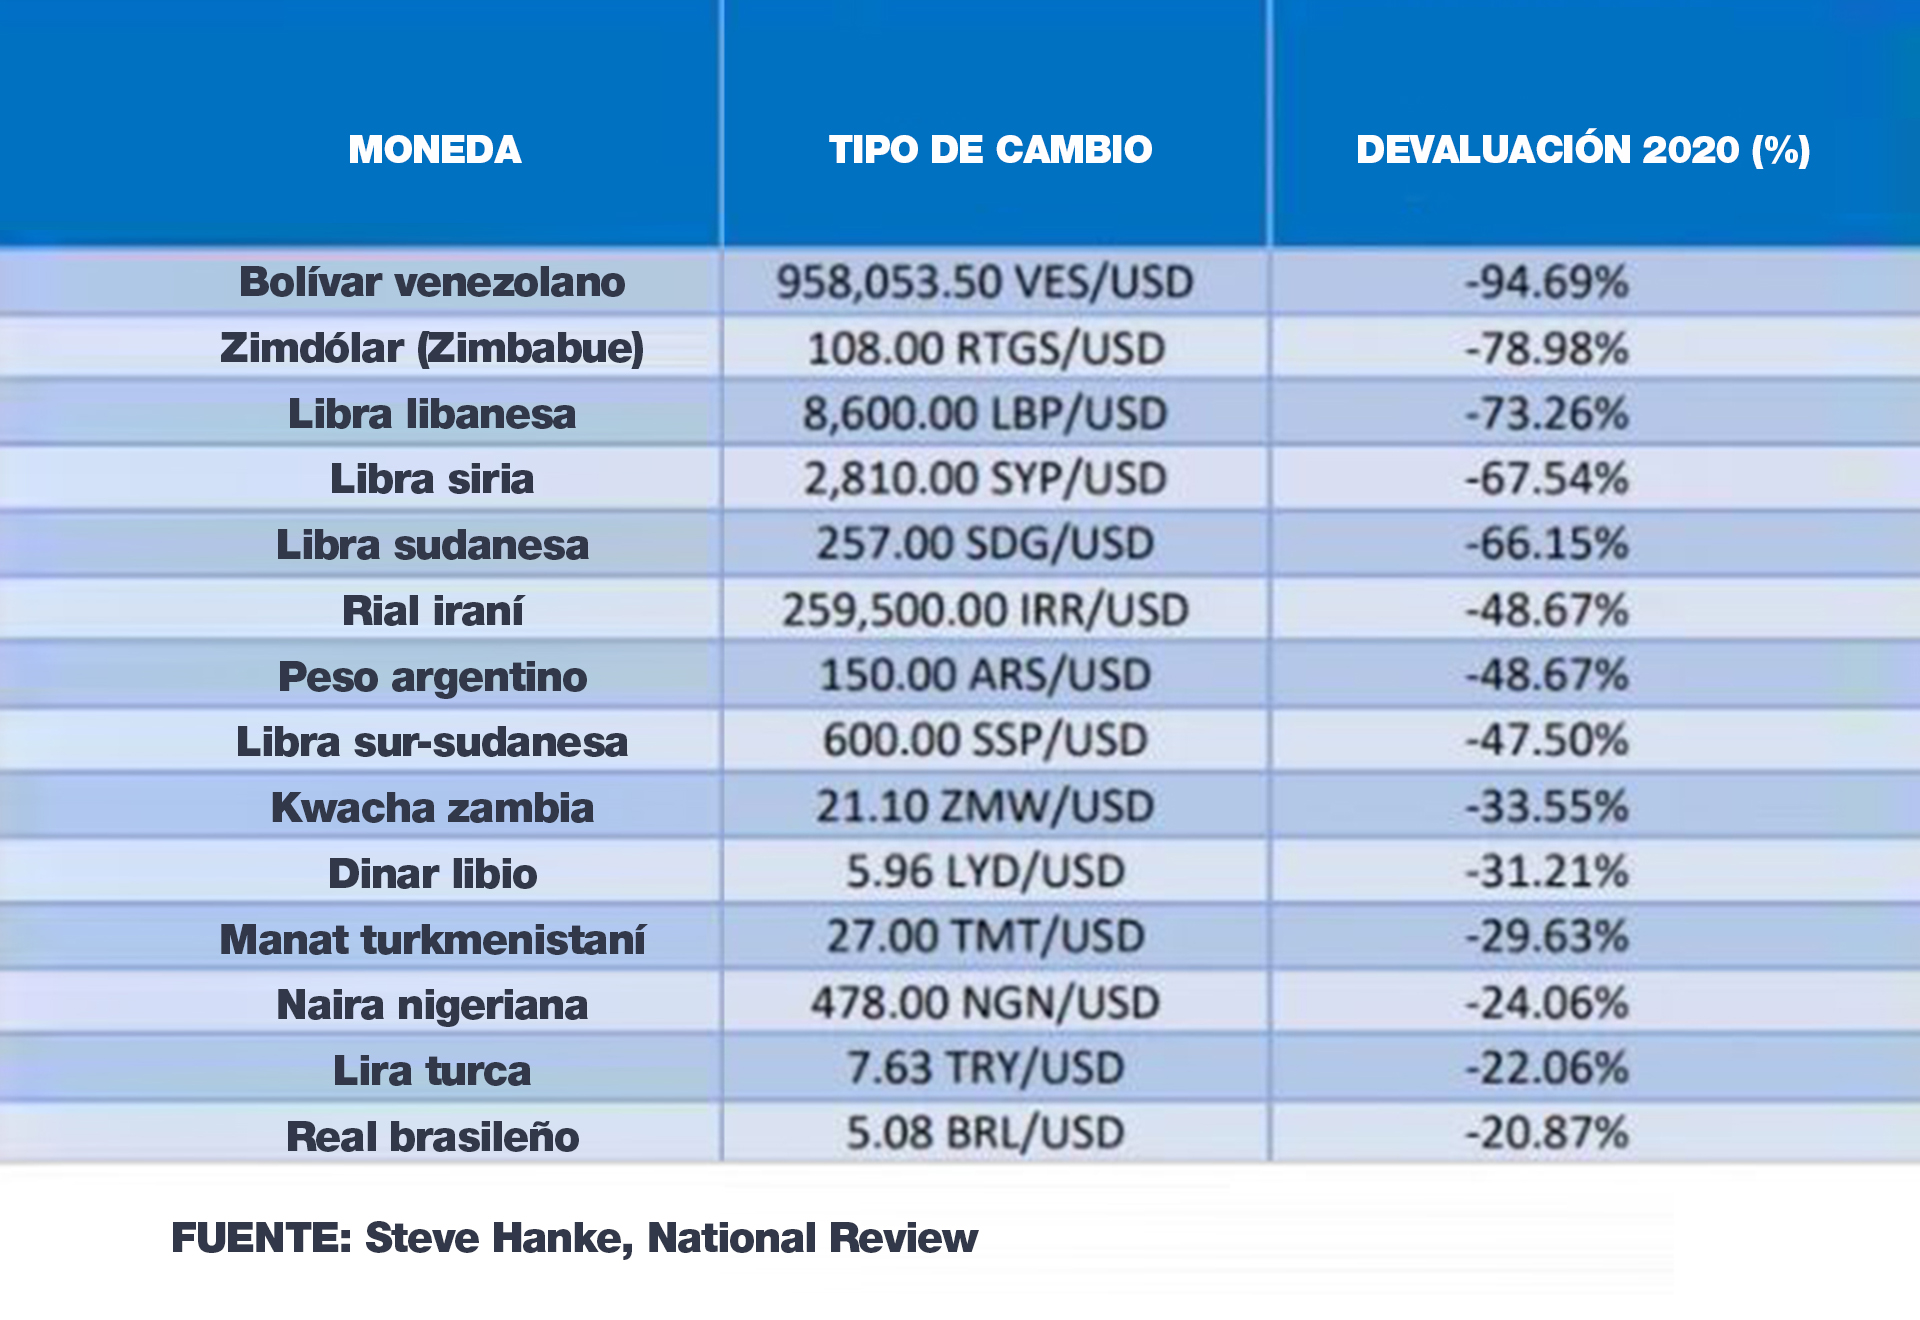 El ranking de las monedas del mundo que más se devaluaron en 2020. Las que lo hicieron más que el peso argentino son de países en guerra o con graves disrupciones internas 